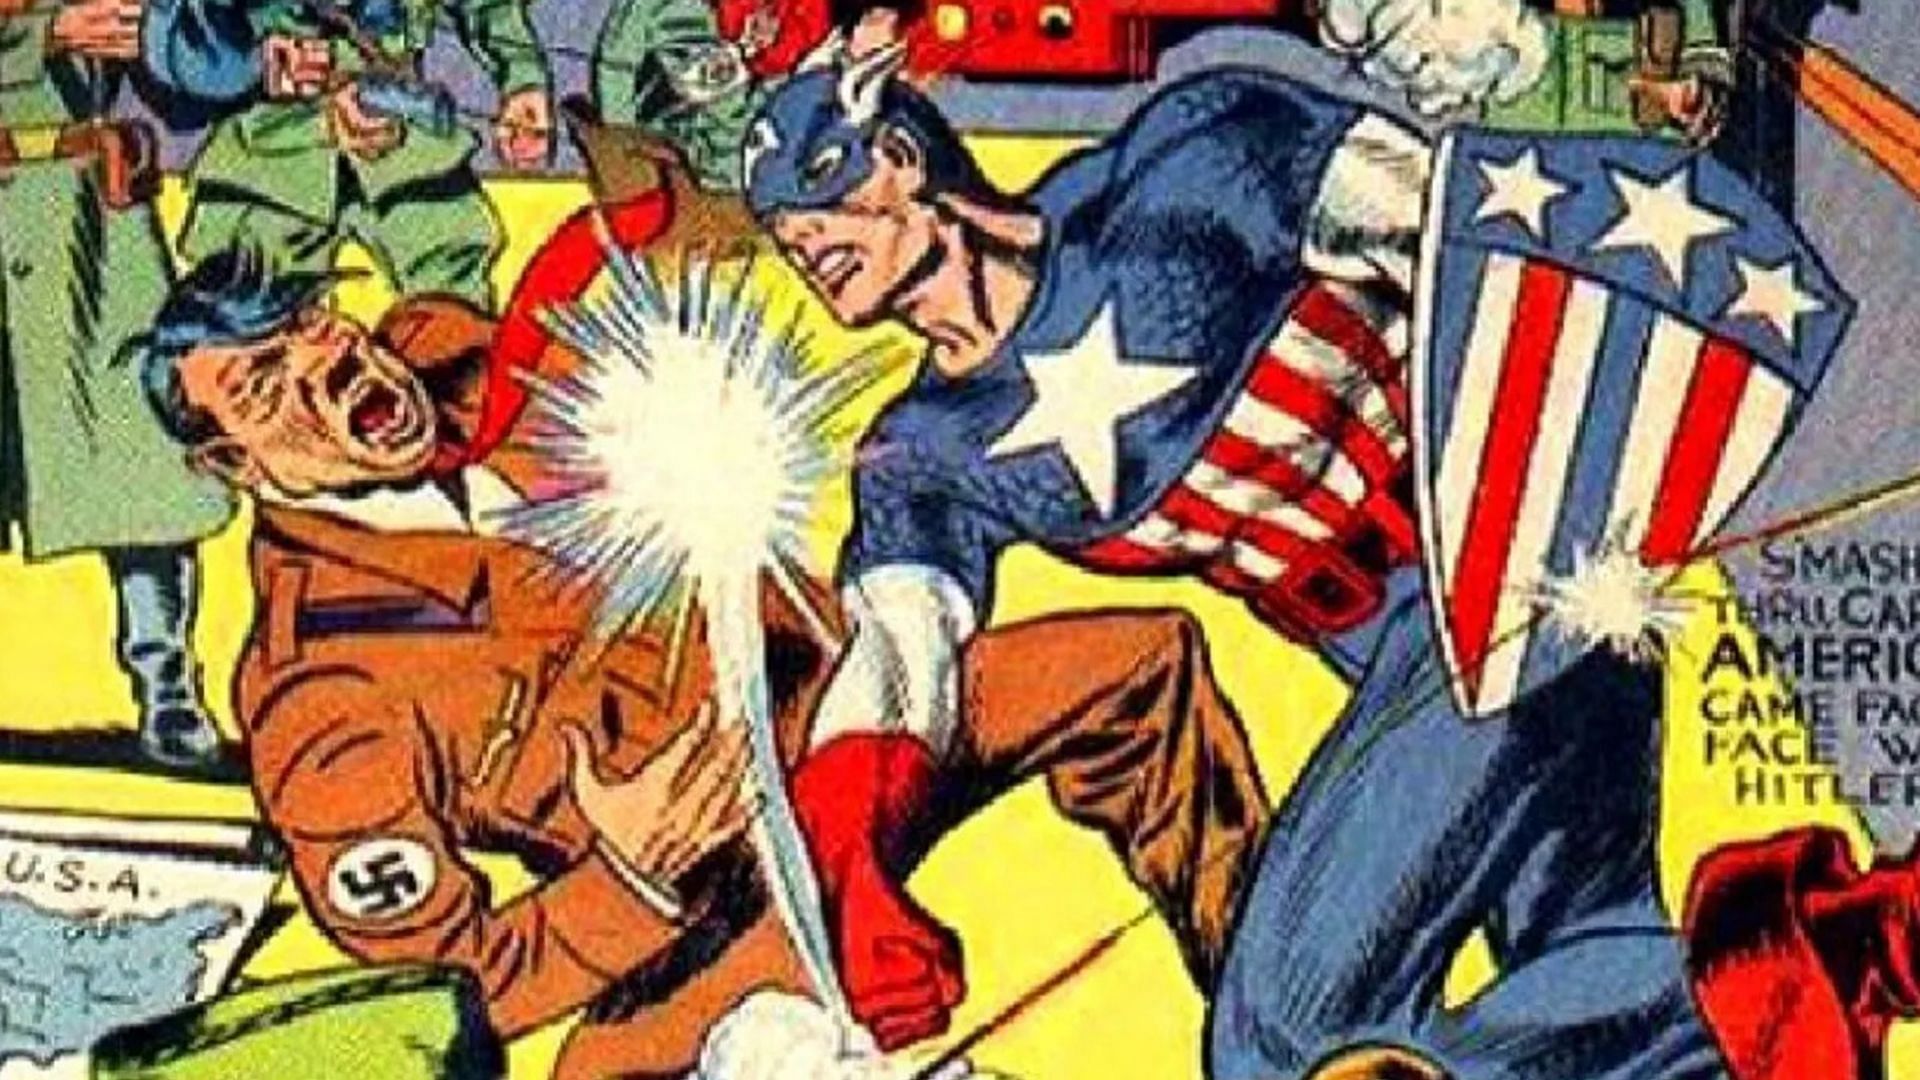 Captain America punching Hitler (Image via Marvel)